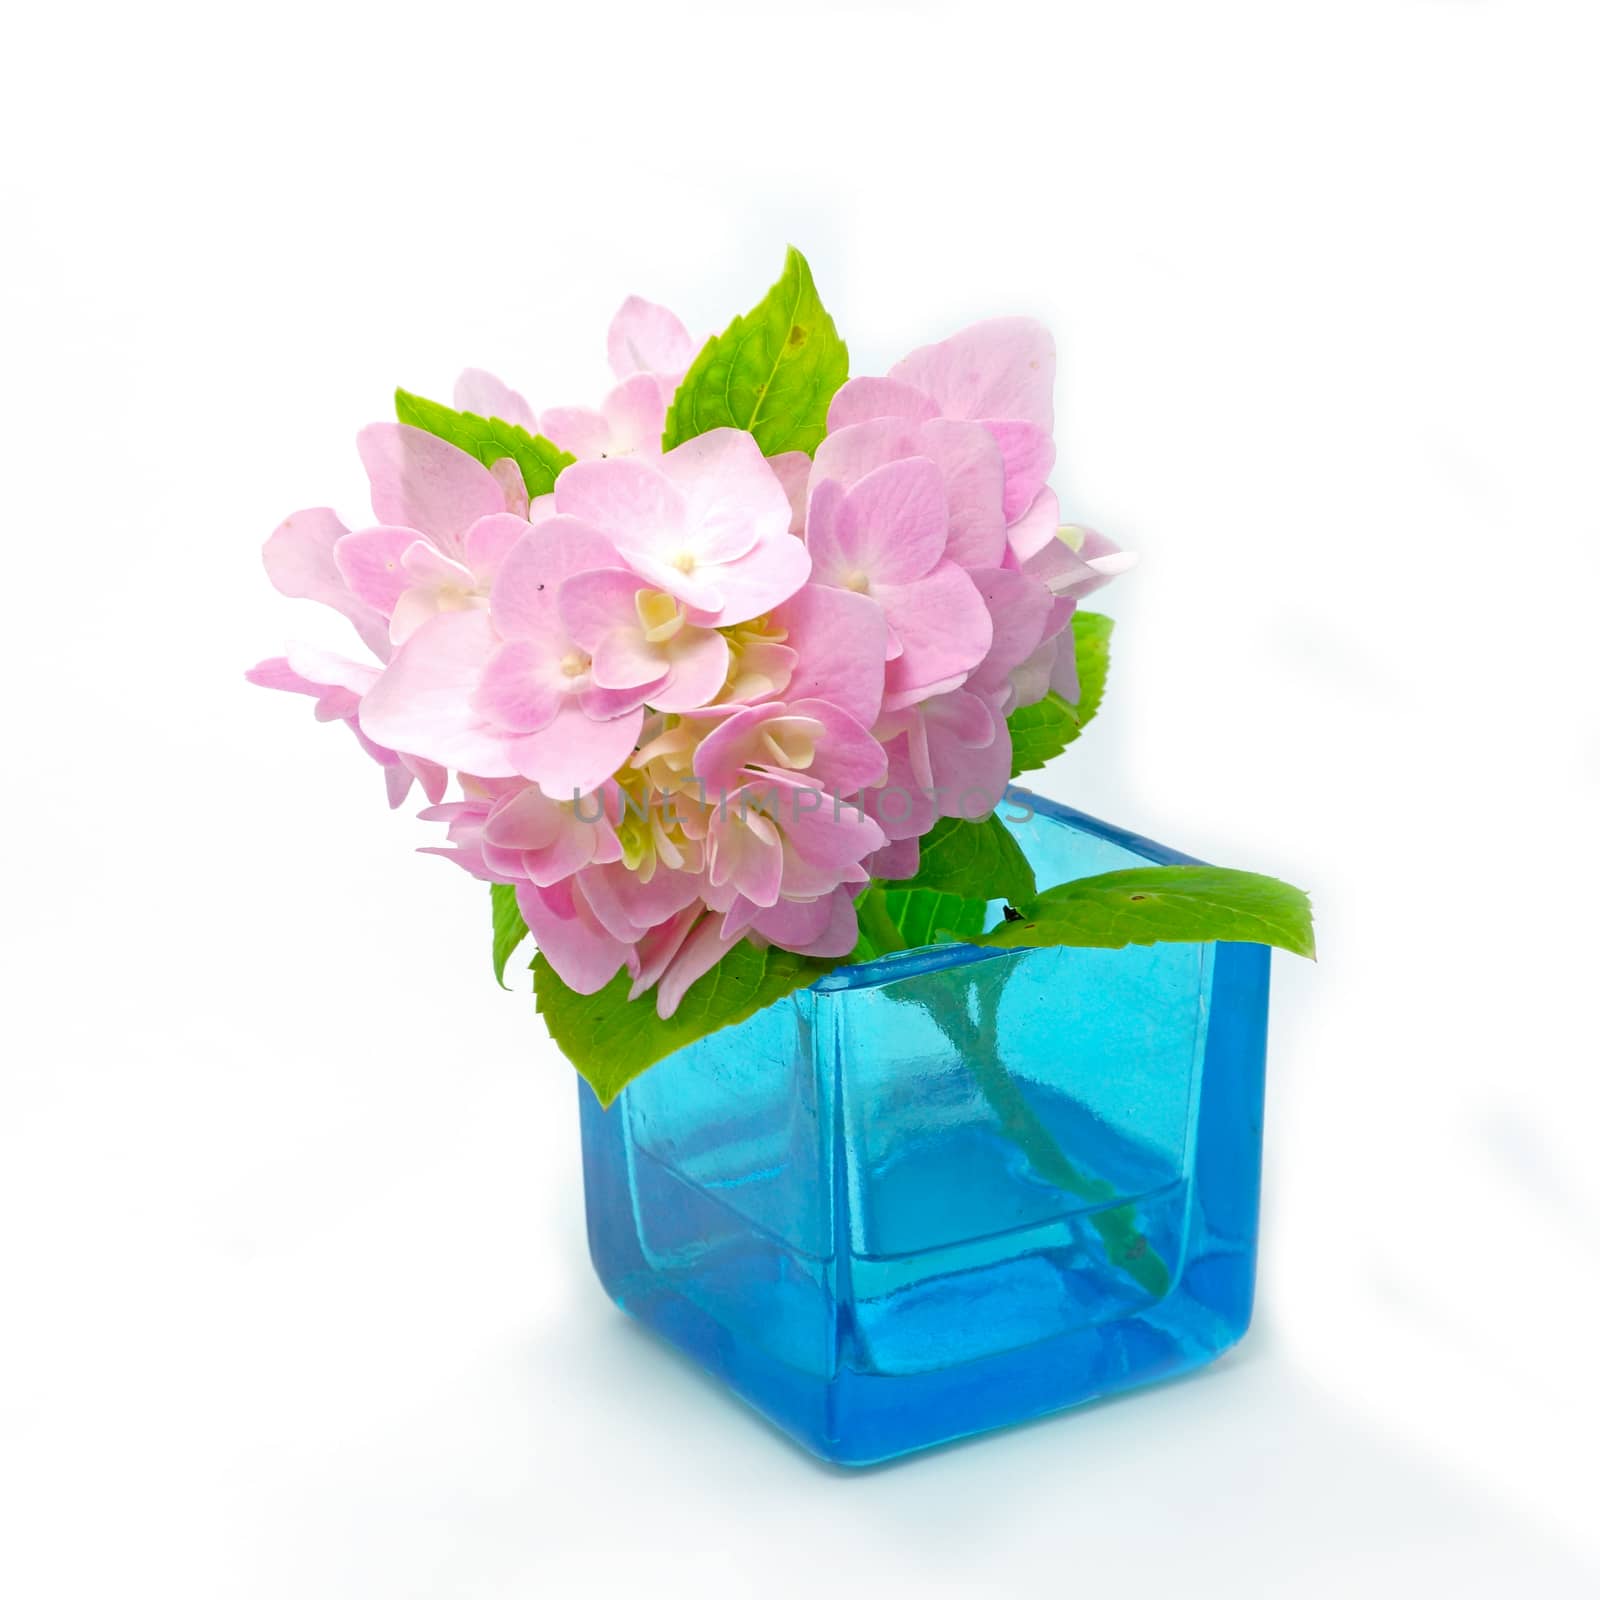 Pink Hydrangea flowers in blue glass.